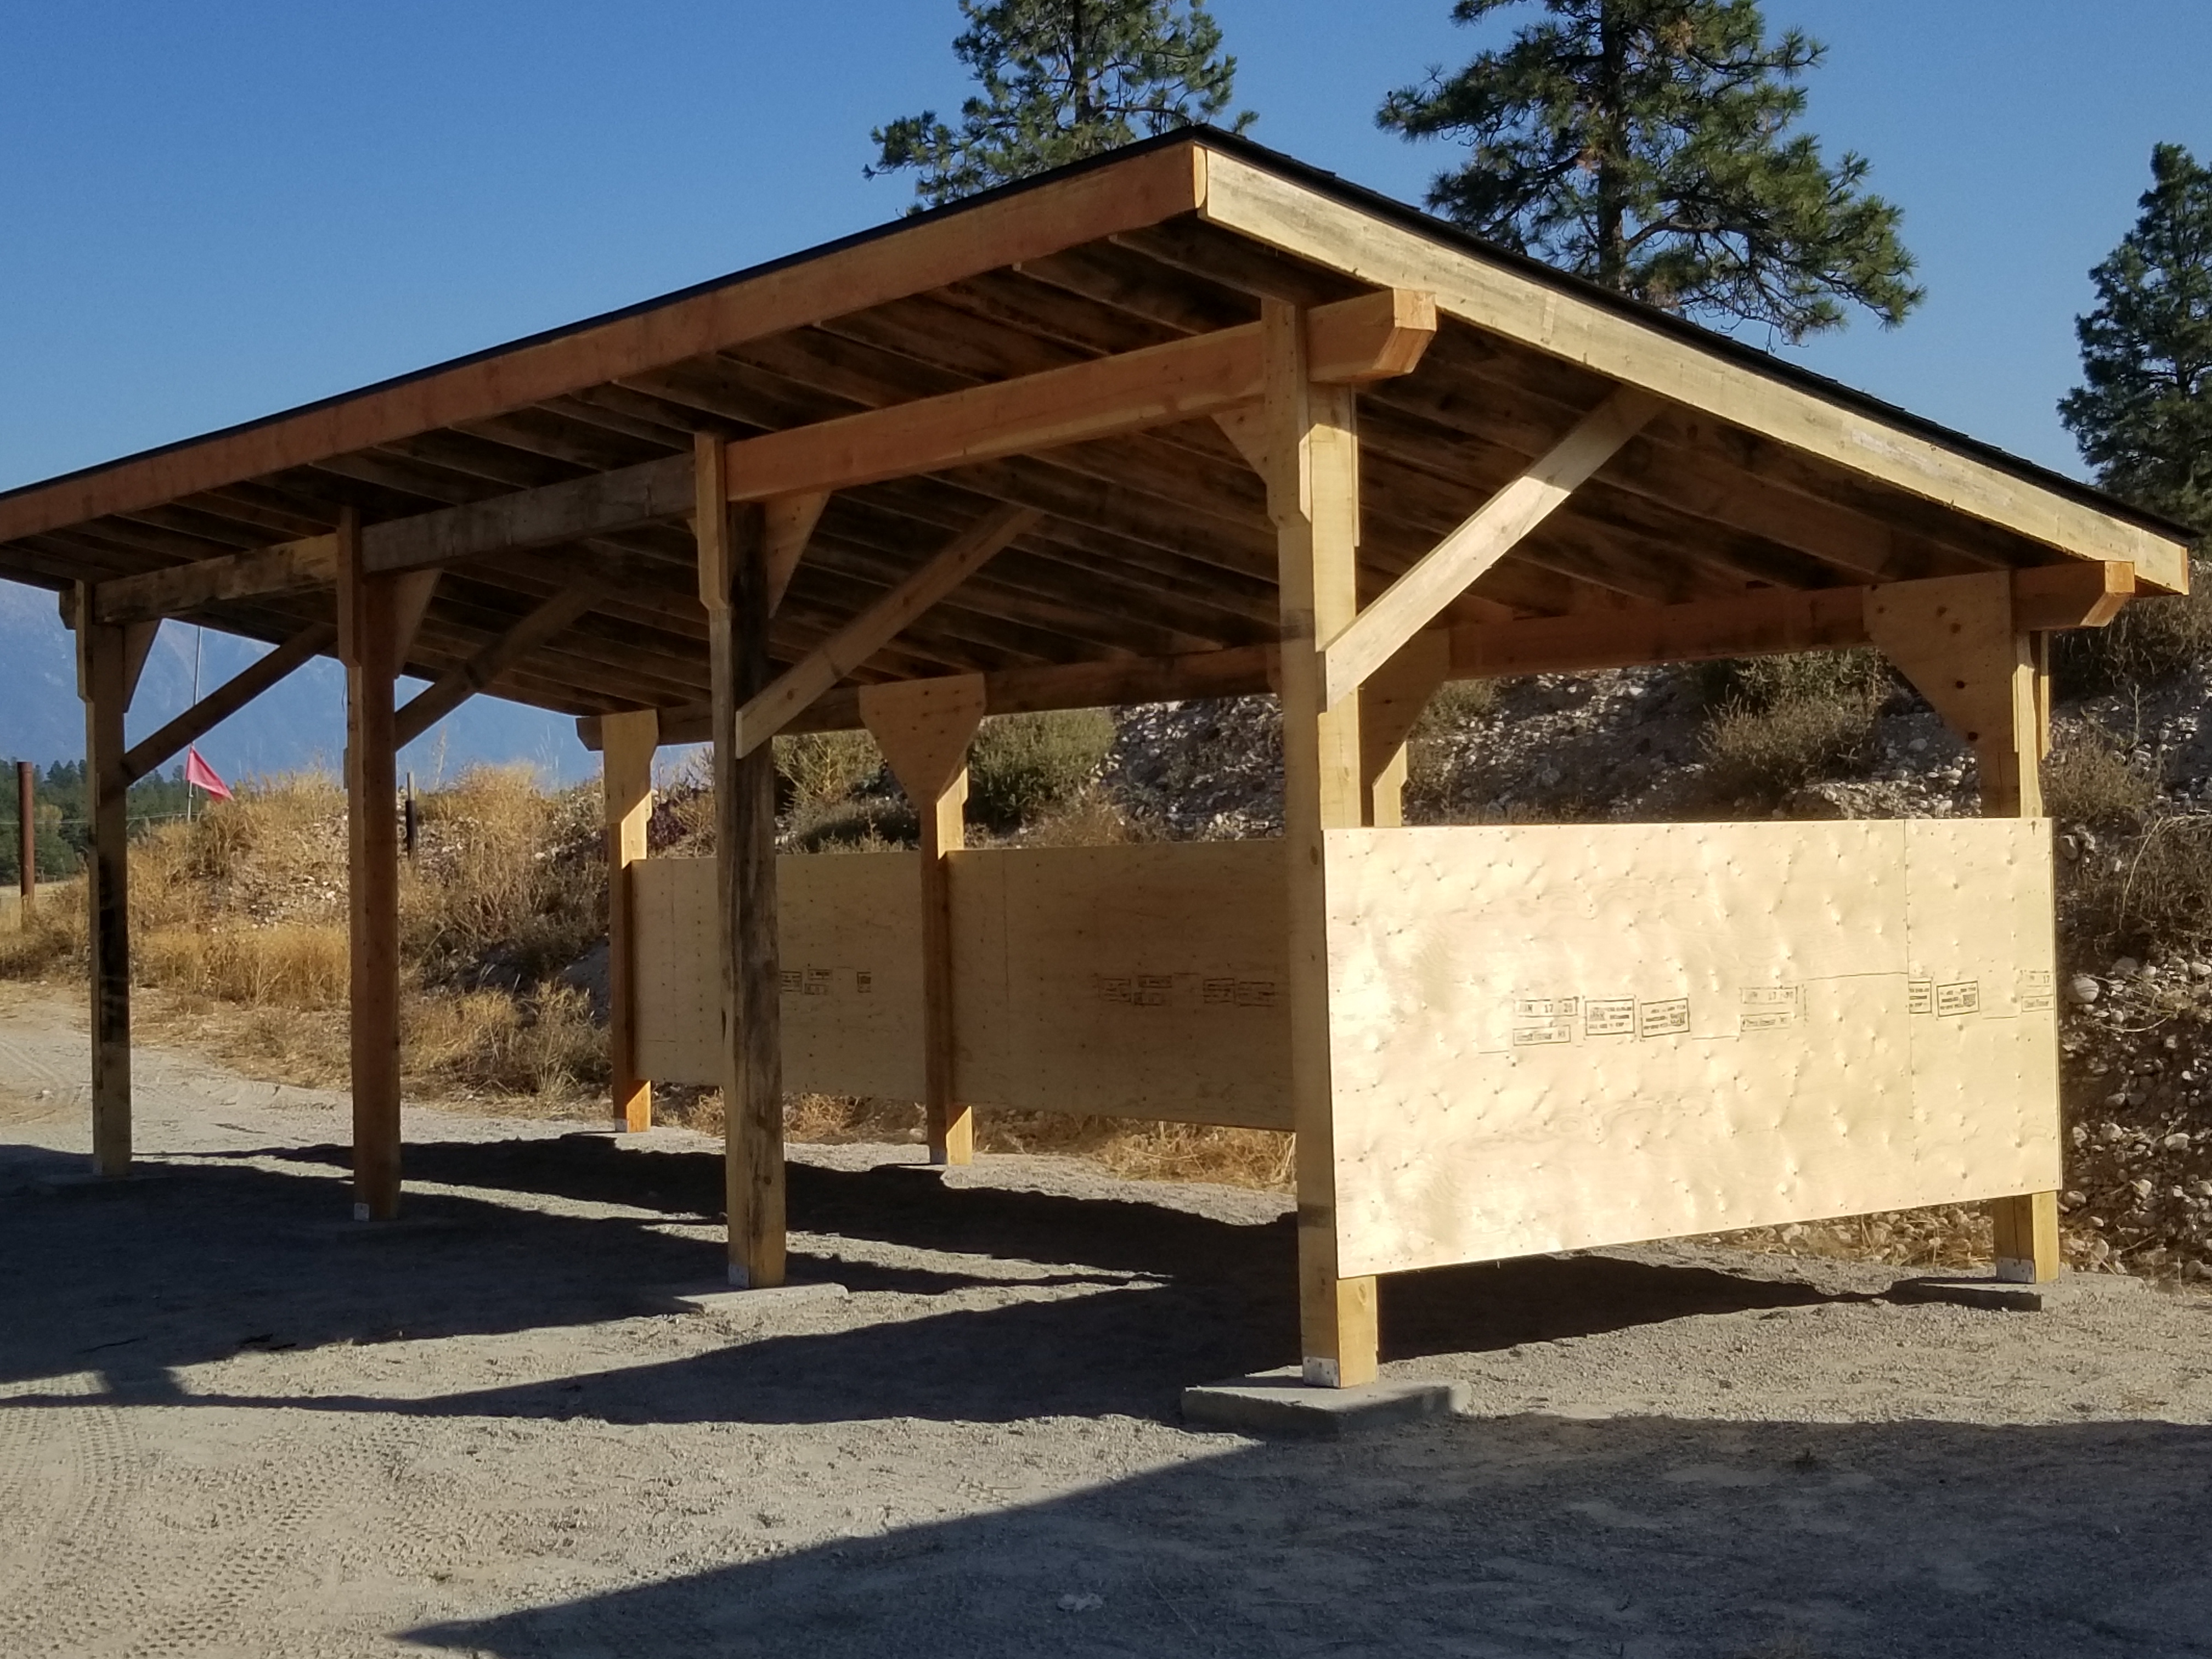 Range 2 Shelter